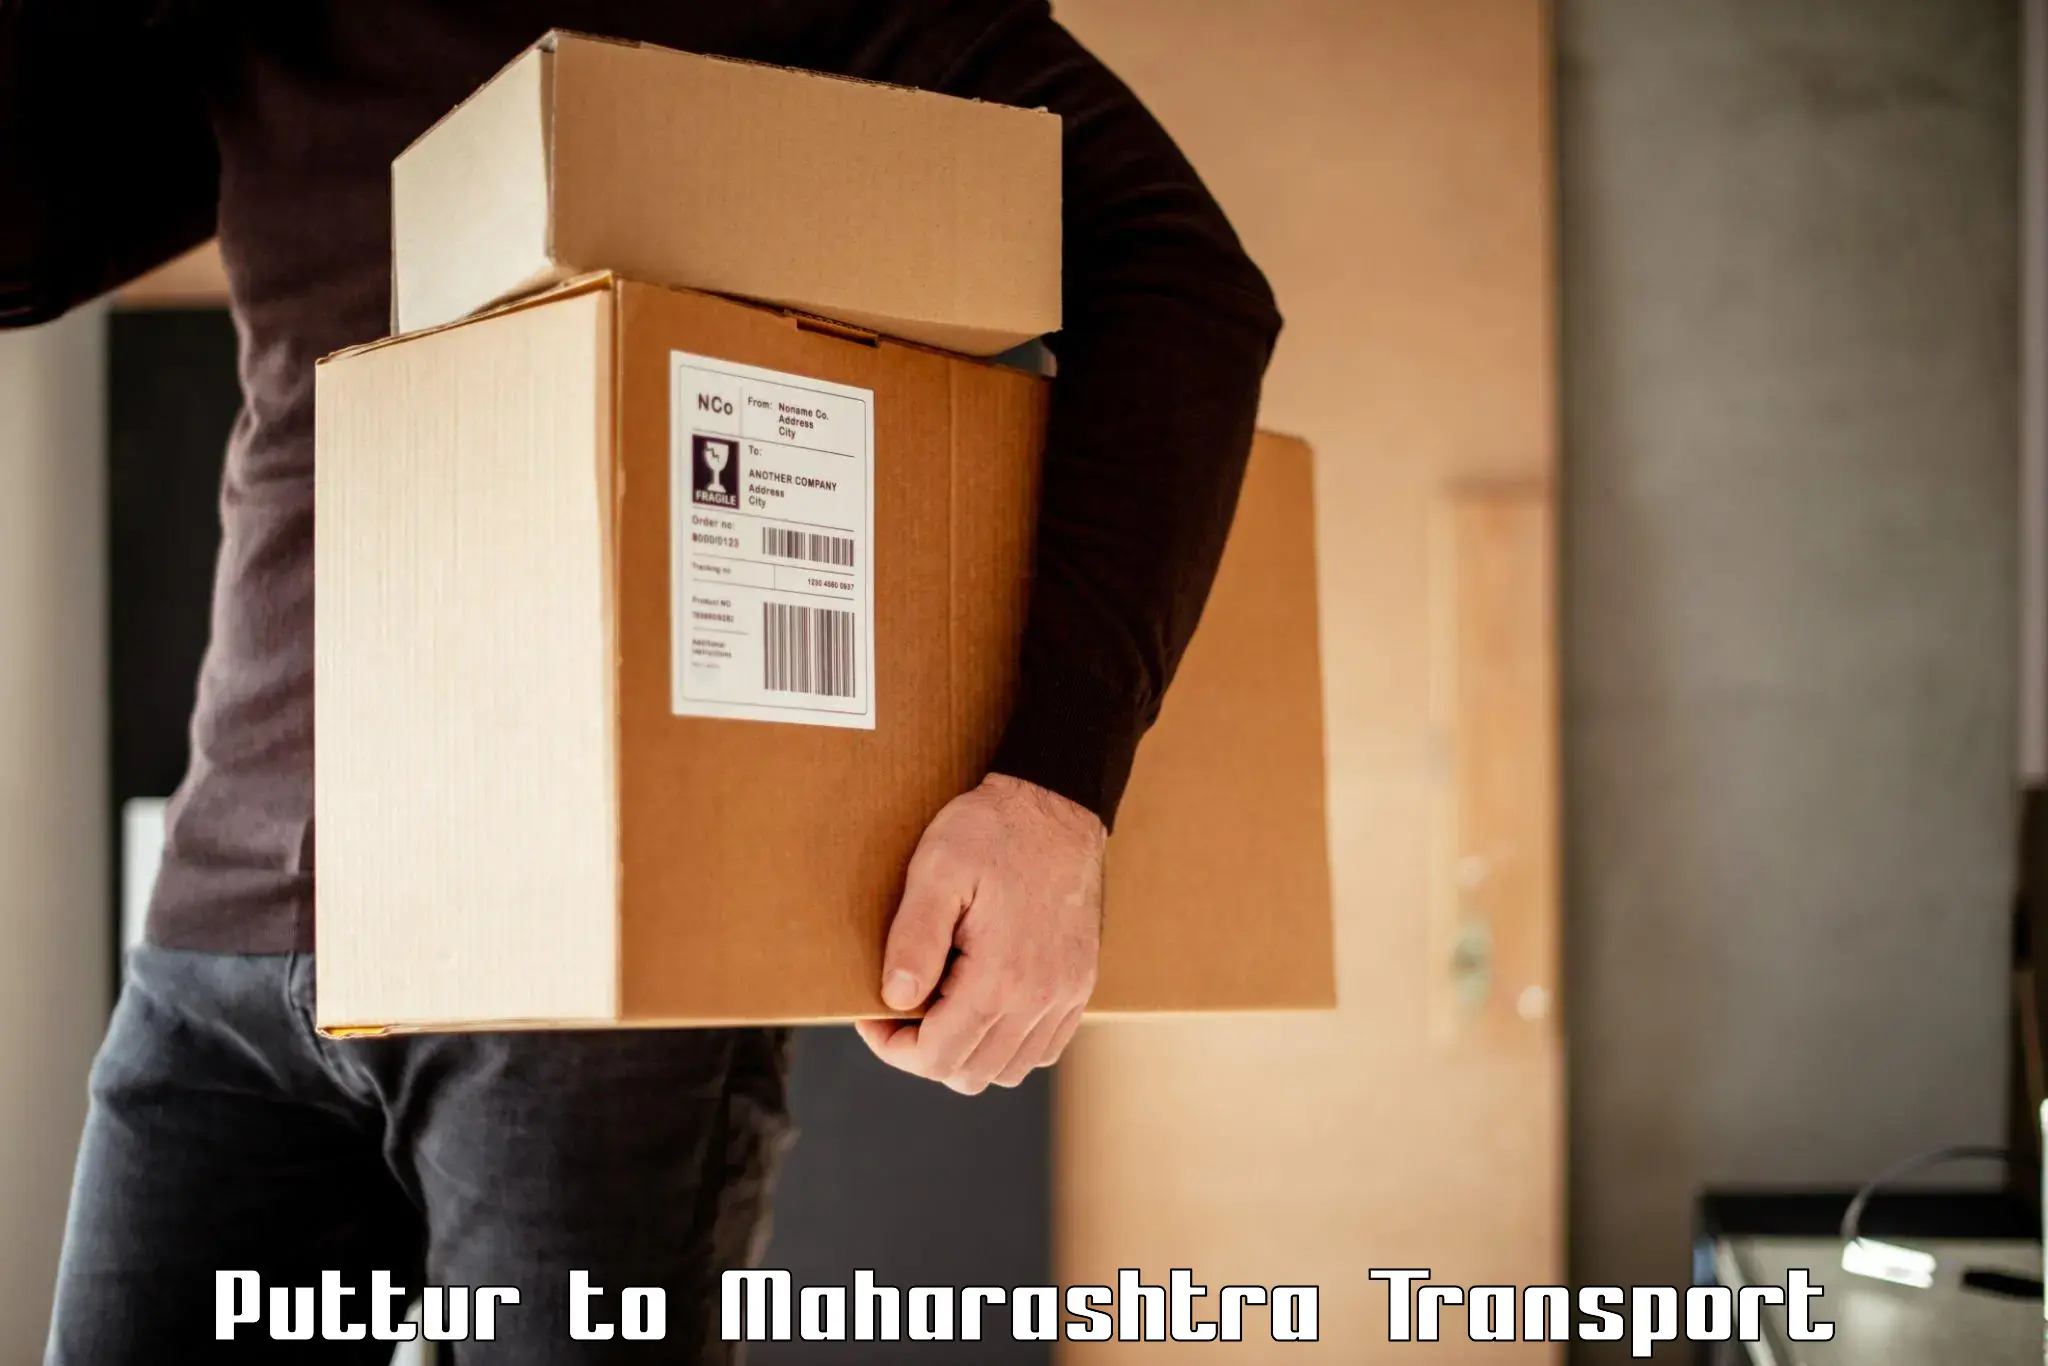 Container transport service Puttur to IIT Mumbai